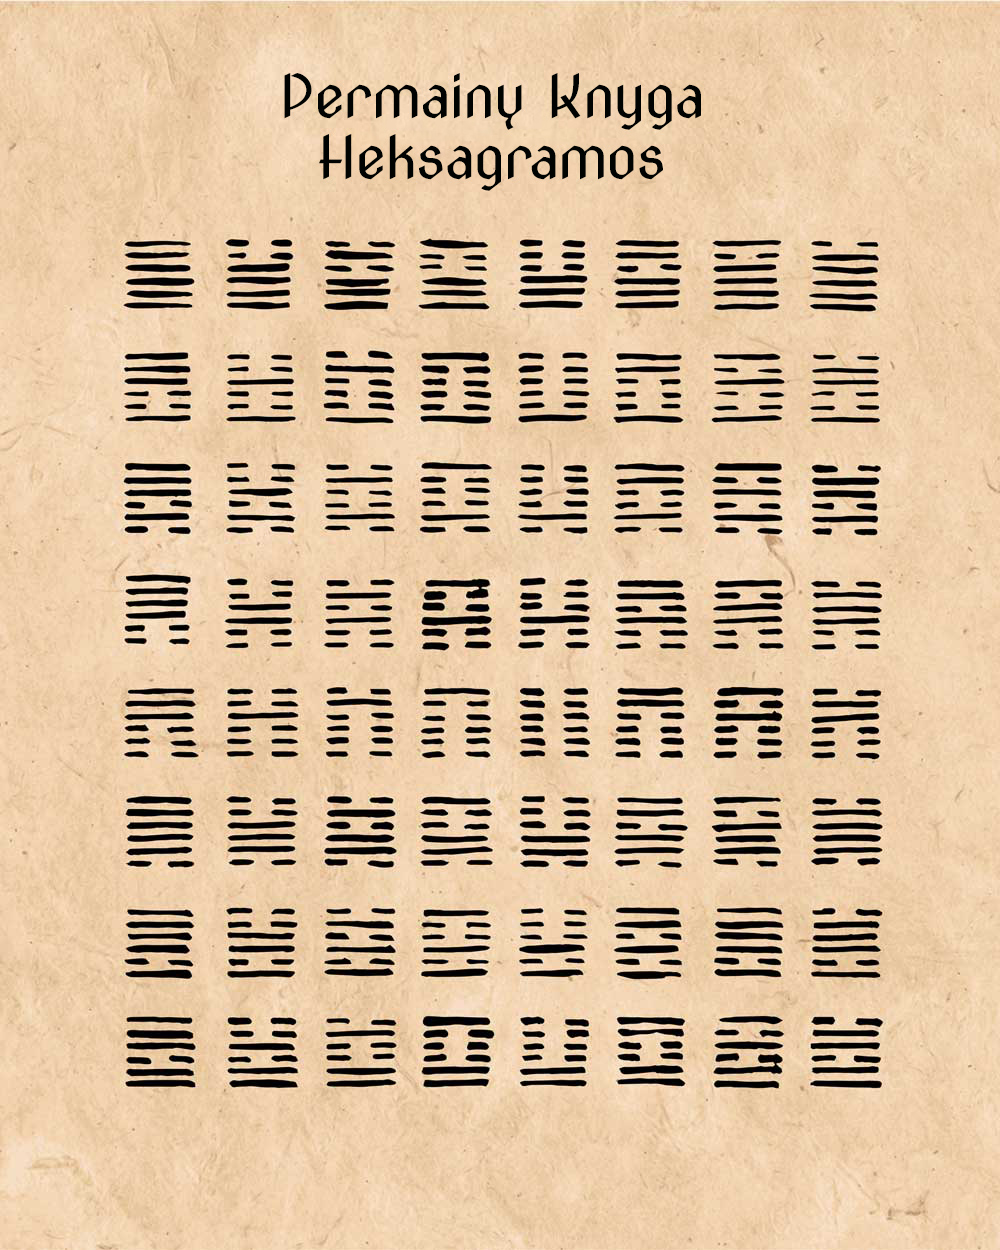 permainų knyga - heksagramos